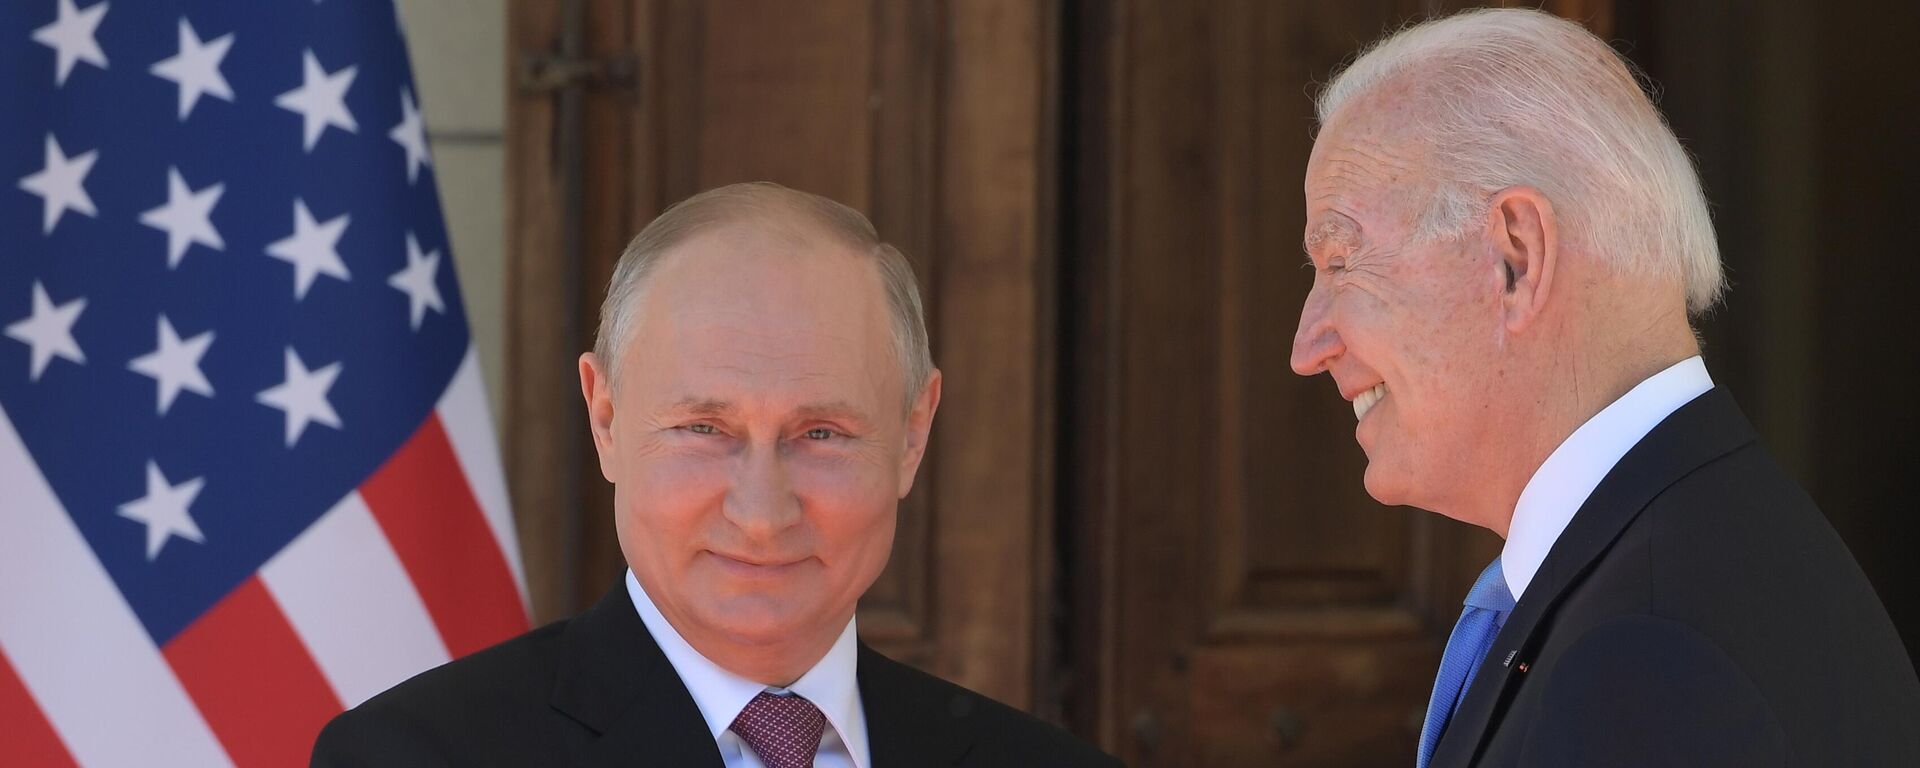 Встреча президентов России и США В. Путина и Дж. Байдена в Женеве - Sputnik Узбекистан, 1920, 28.09.2021